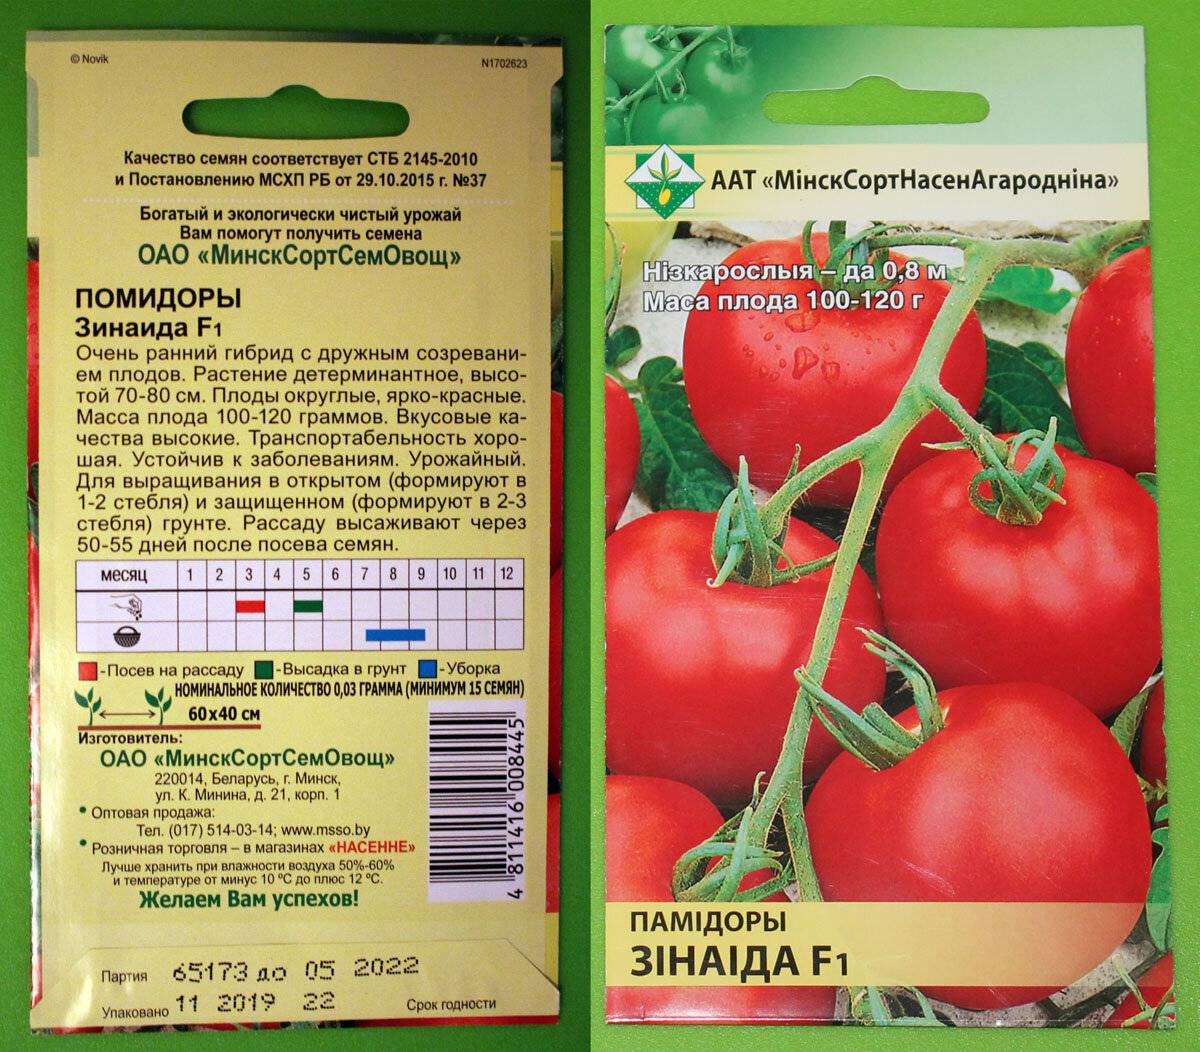 Лучшие сорта детерминантных томатов для открытого грунта и теплицы: самые урожайные и вкусные